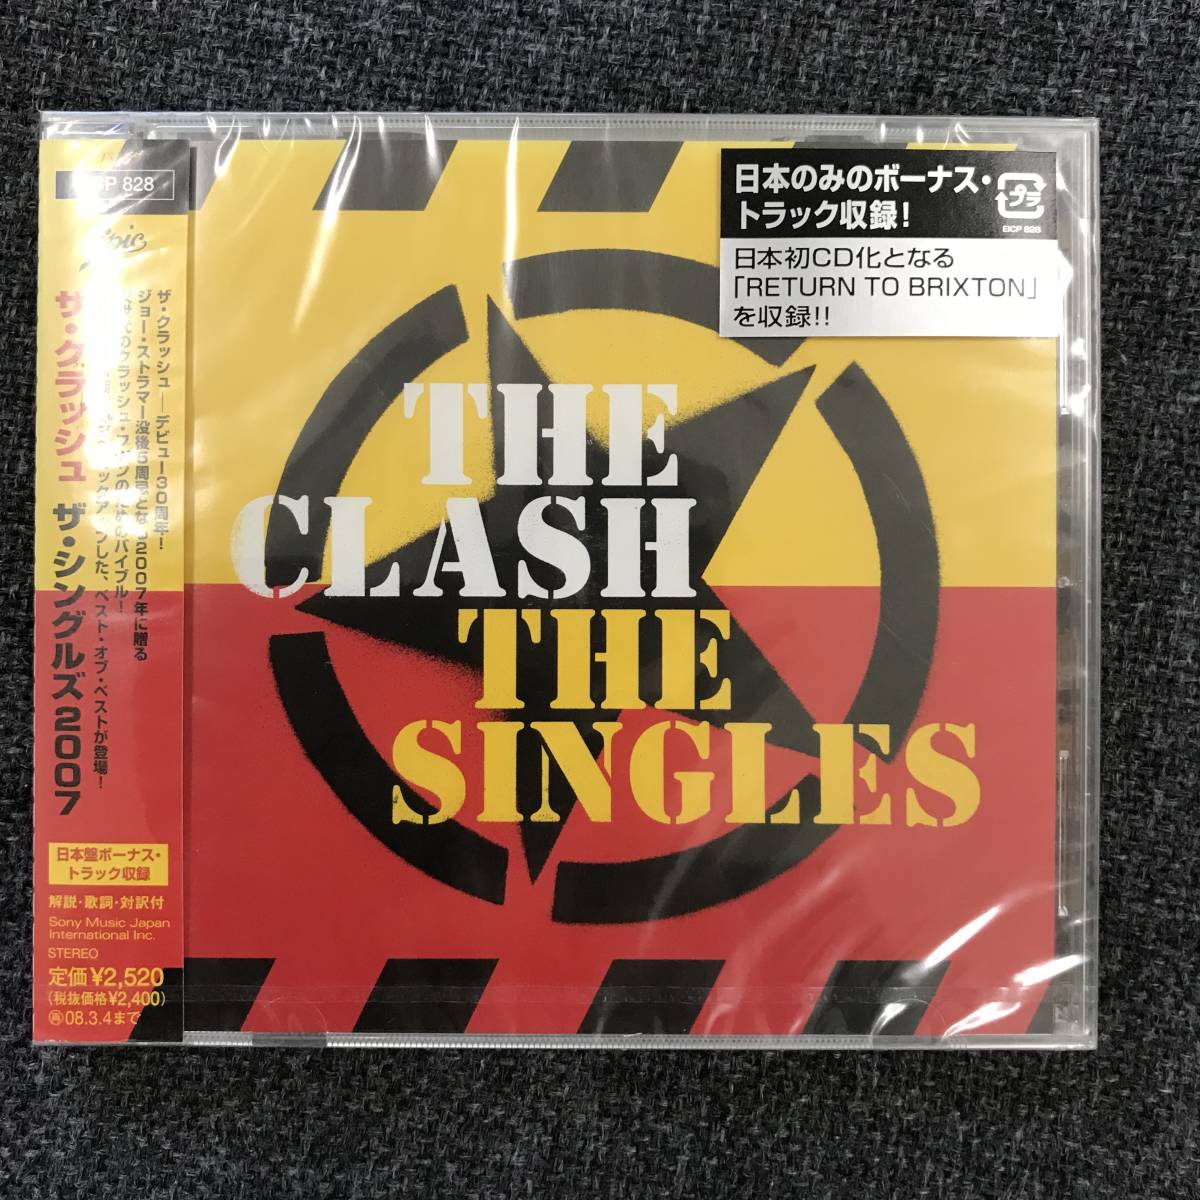 新品未開封CD☆ザ・クラッシュ ザ・シングルズ.。(2007/09/05)/ EICP828..